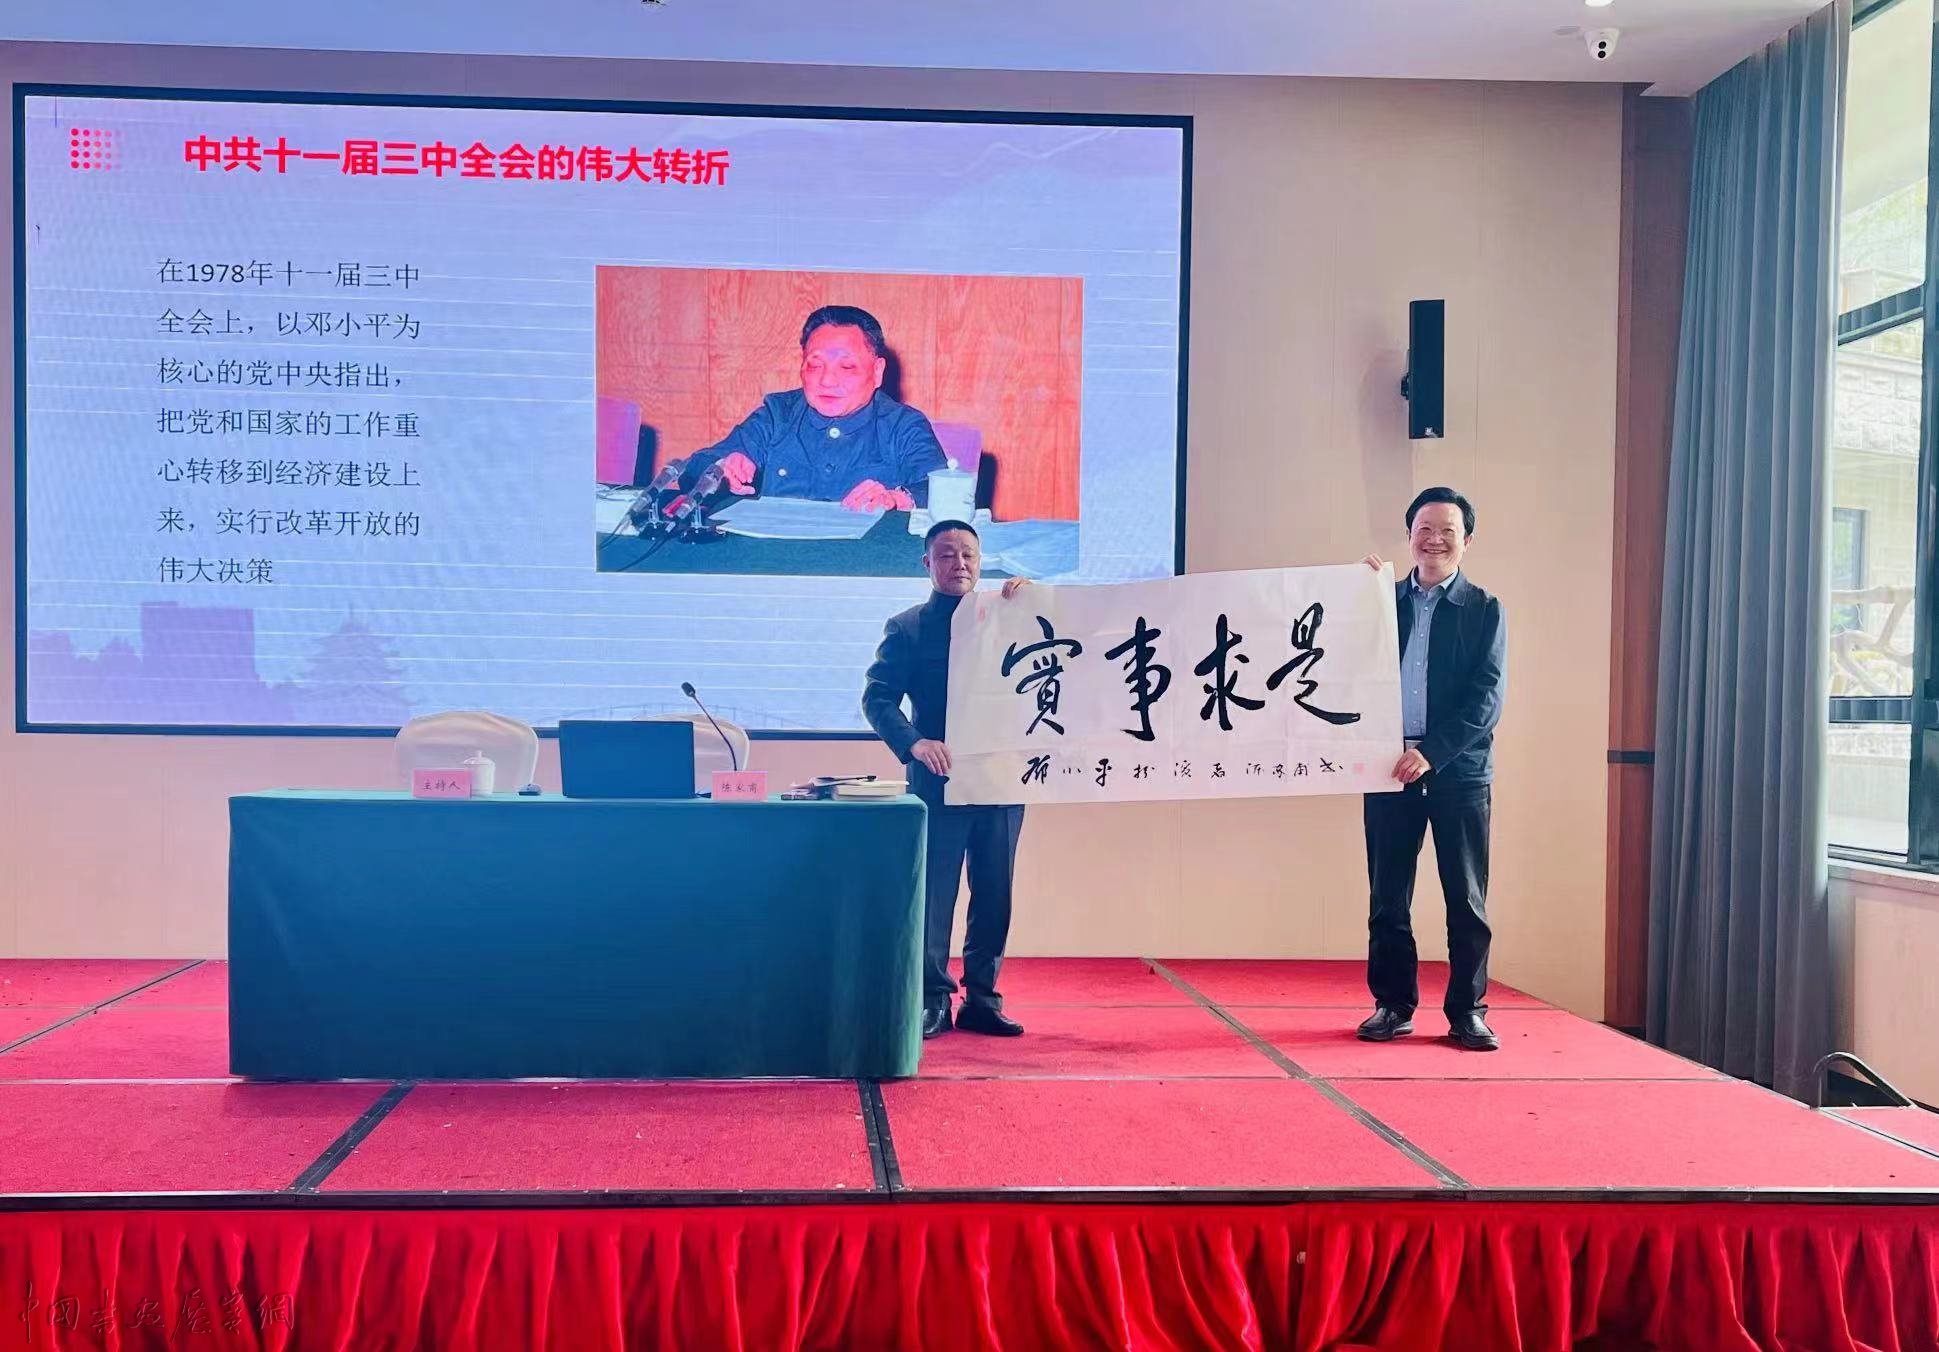 陈家甫情景式党纪教育演讲在广安受到热烈欢迎